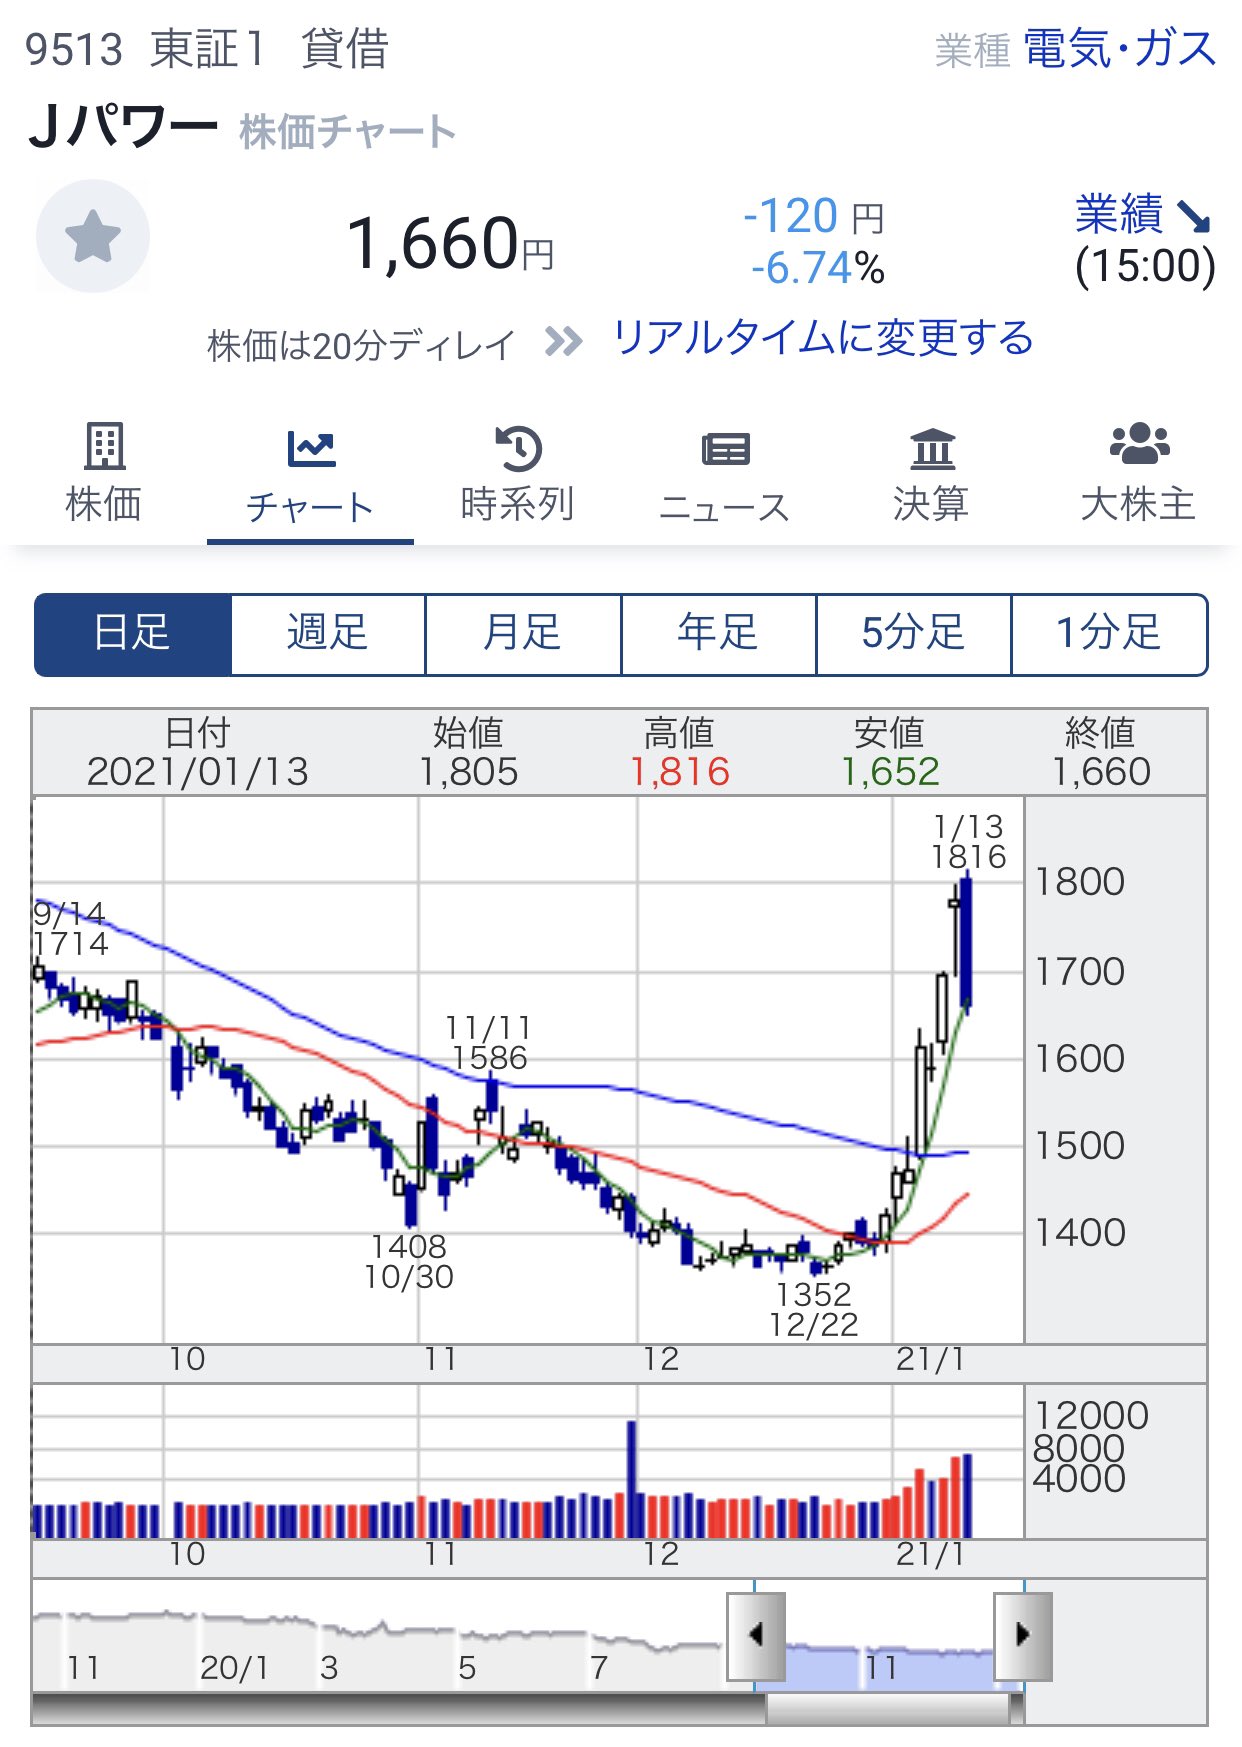 J パワー 株価